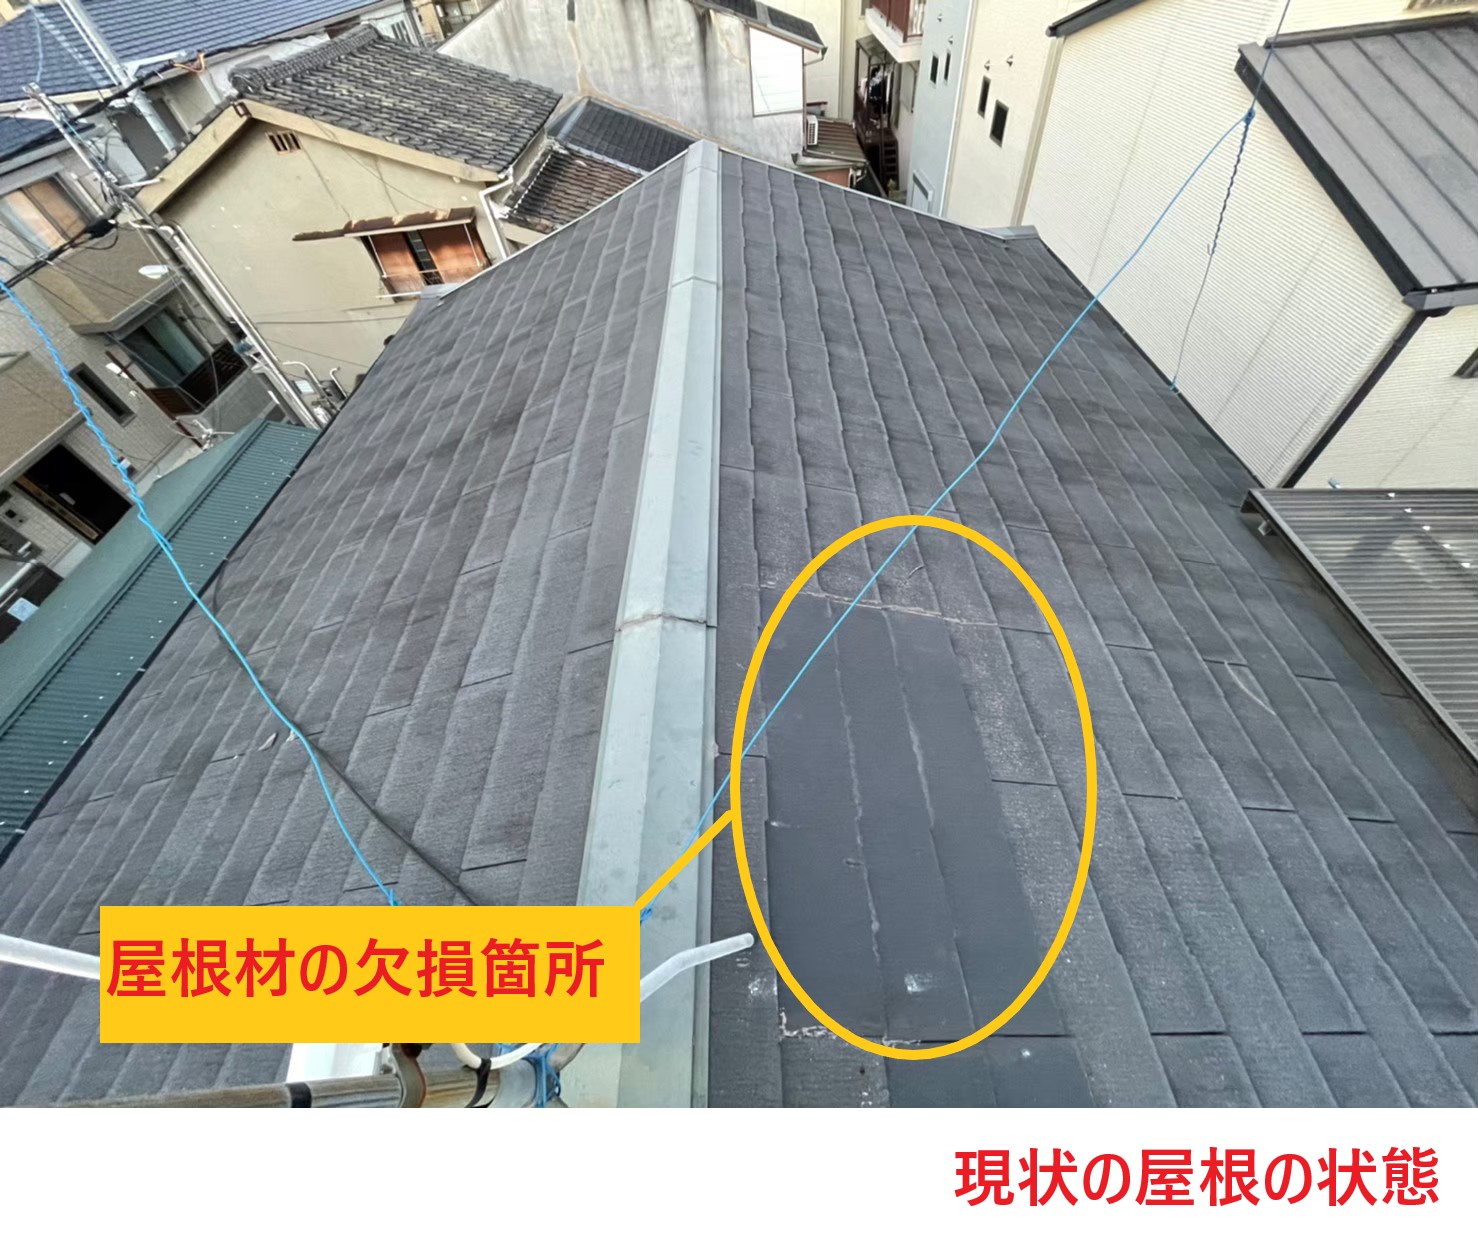 滋賀県近江八幡市河原町でスレート屋根の劣化に伴い屋根の調査依頼があり現場調査を実施